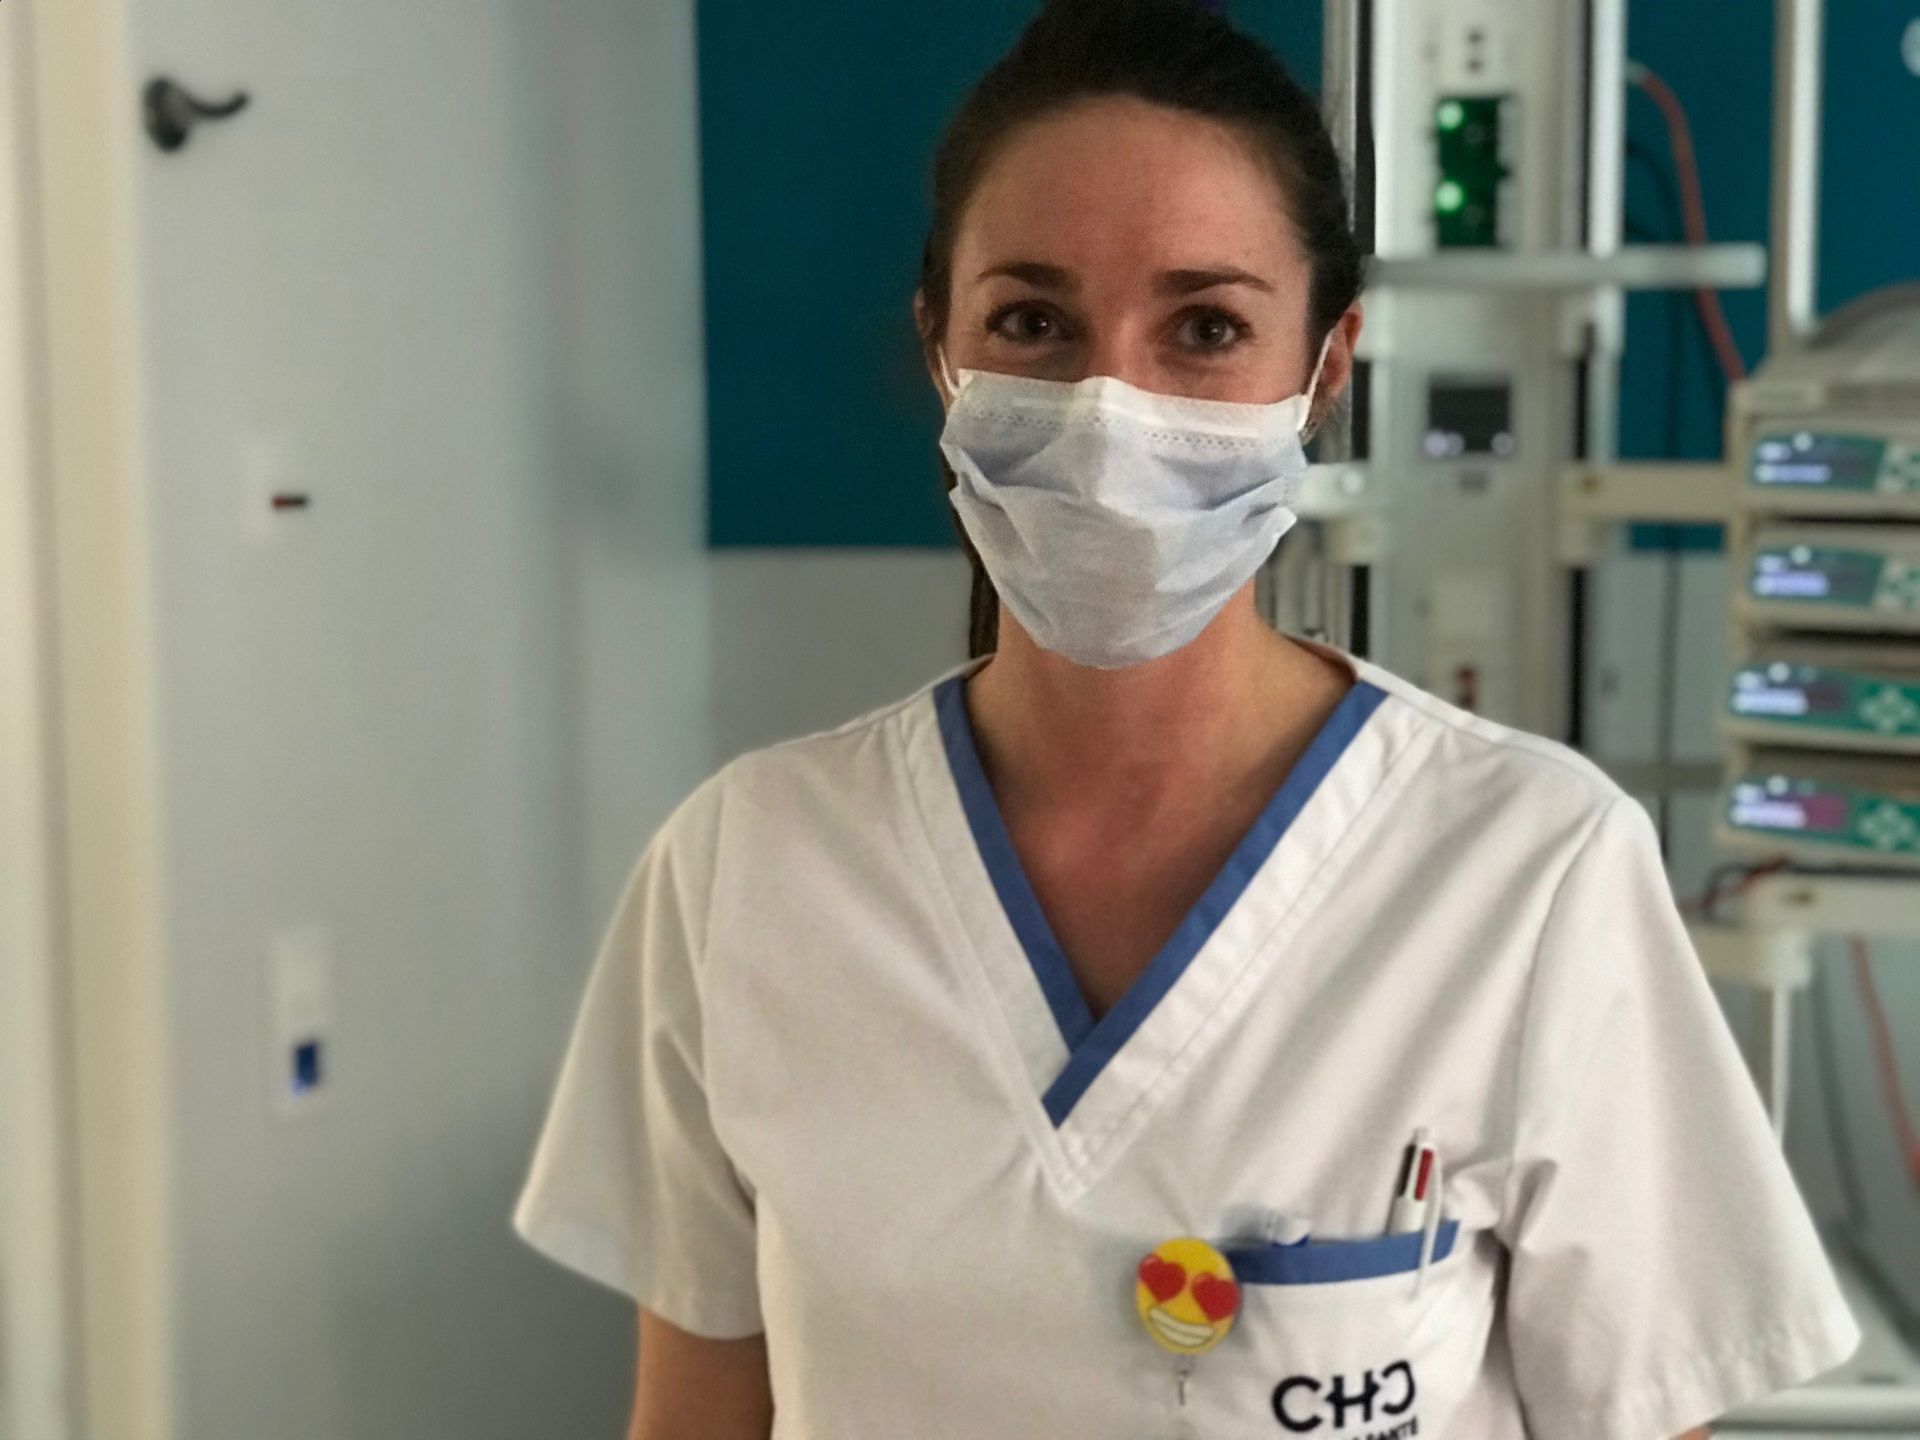 Melody Secundo, infirmière aux soins intensifs du CHC de Liège